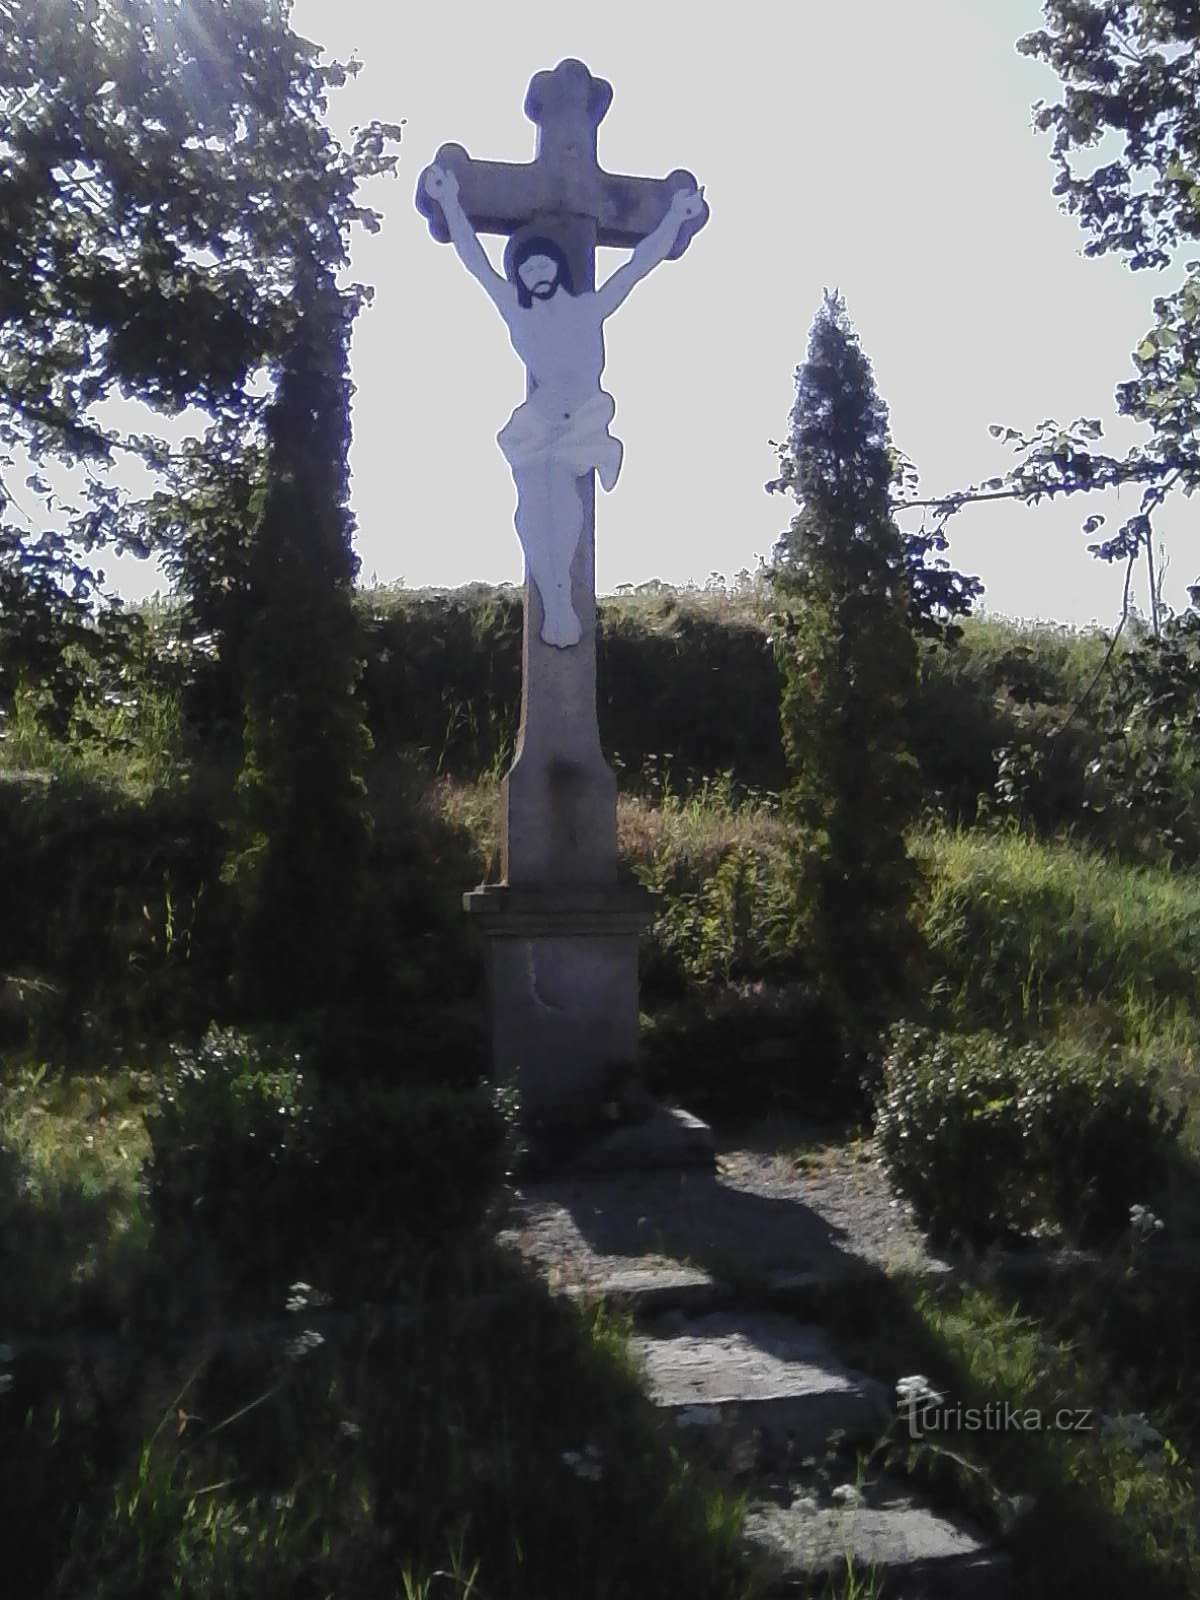 2. Σταυρός στο Horní Ves.